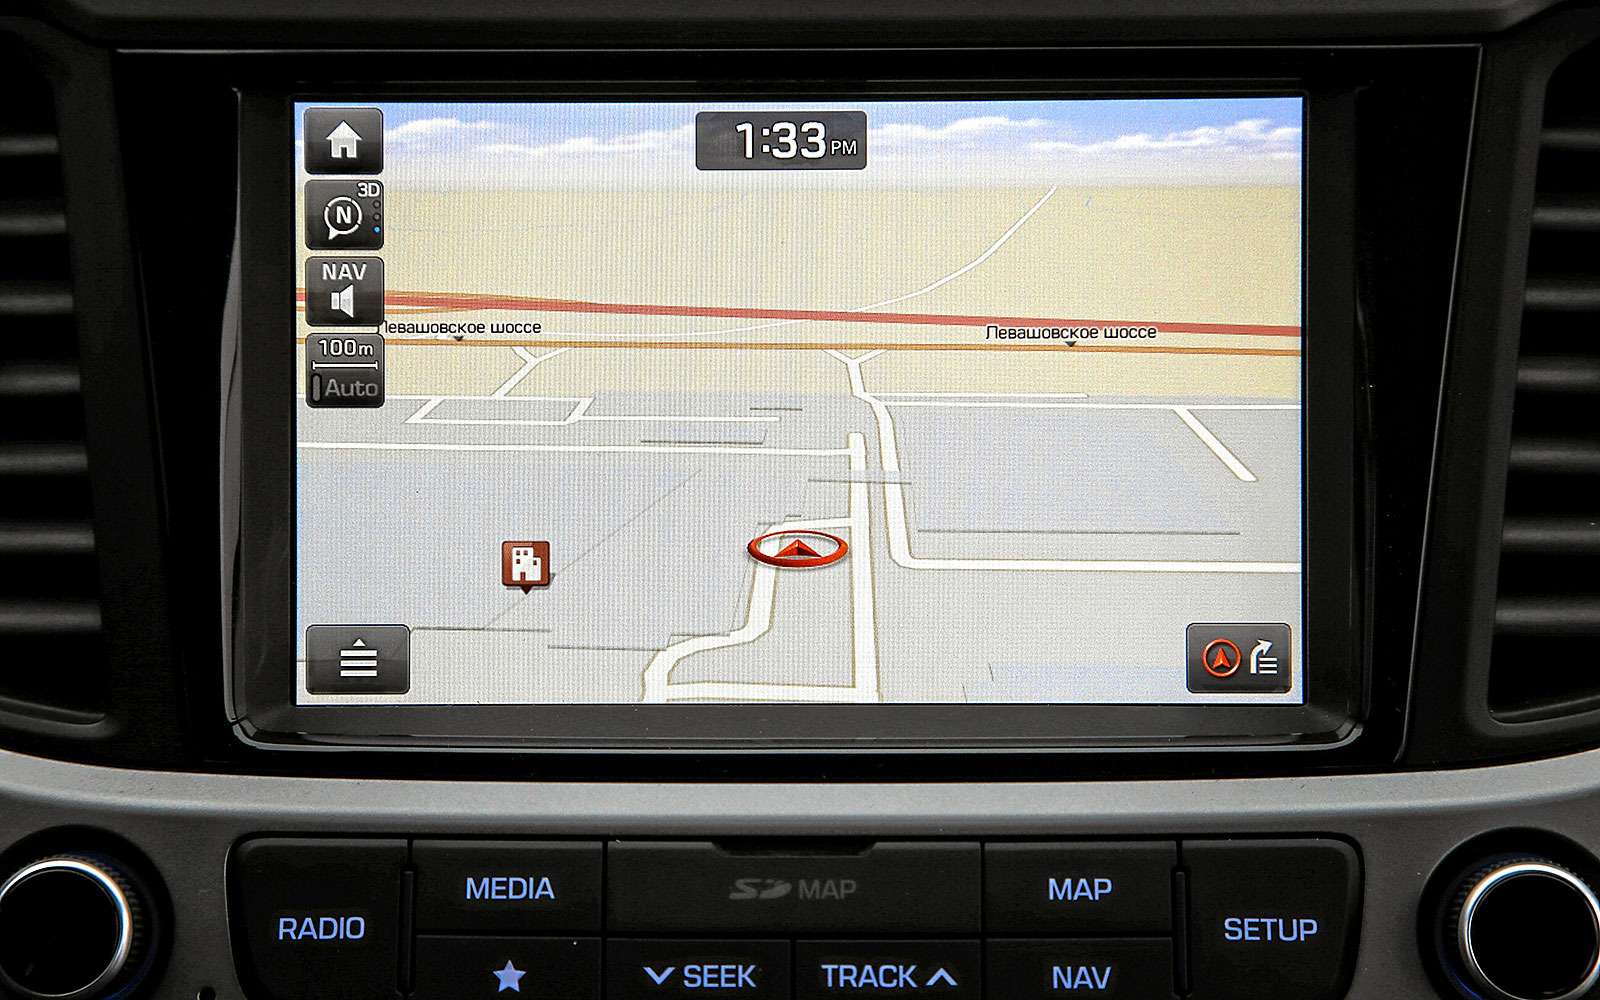 Интерфейс встроенного навигатора нидерландской компании Tom-Tom интуитивно понятен. Любопытно, что эта навигационная система пока недоступна более дорогим моделям Hyundai Elantra и Creta.